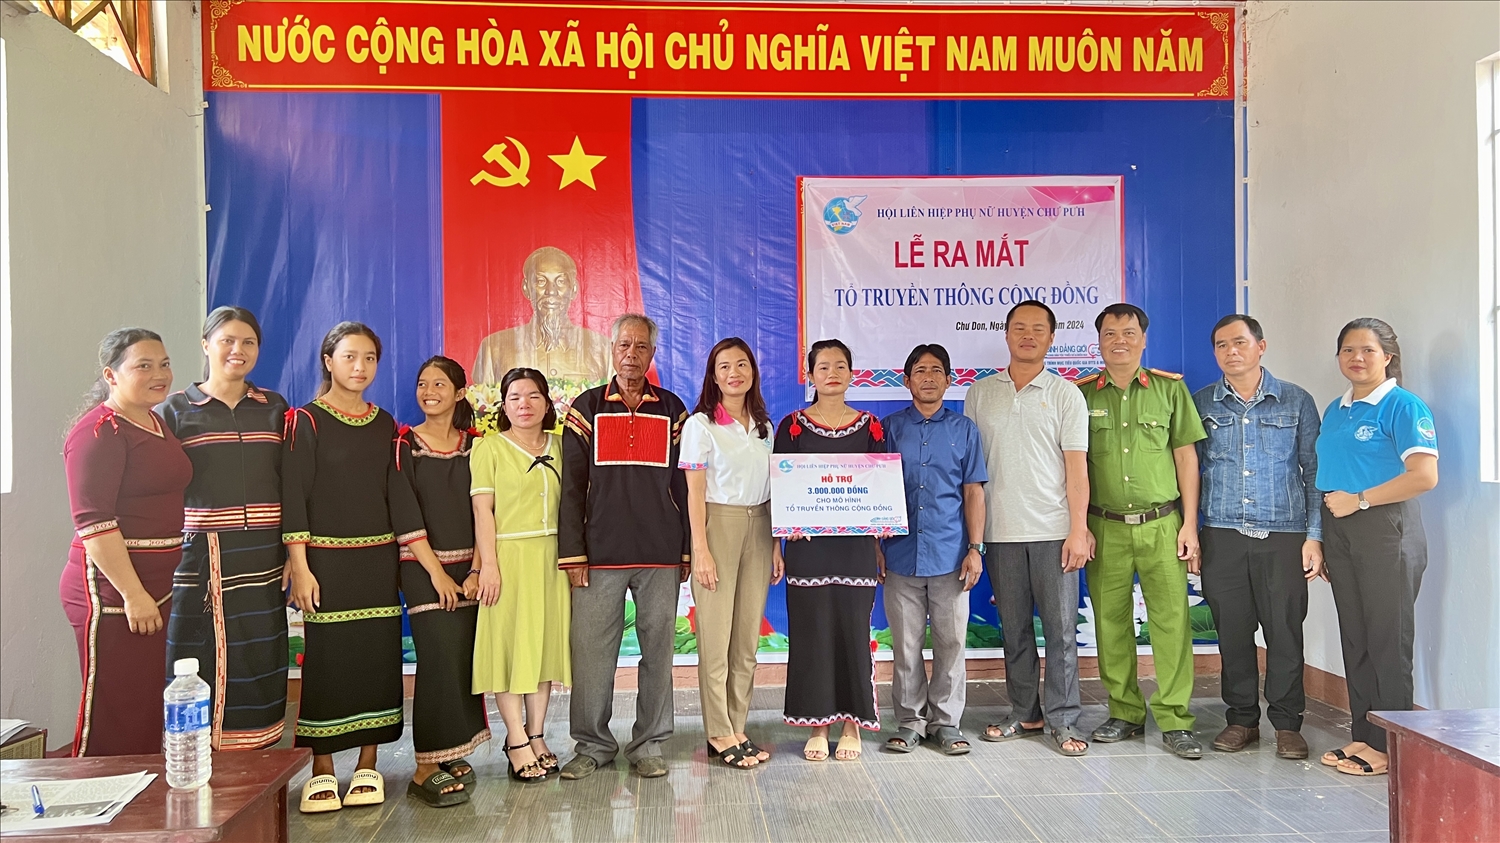 Phụ nữ Chư Pưh (Gia Lai) ra mắt Tổ truyền thông cộng đồng tại làng Plei Hlốp